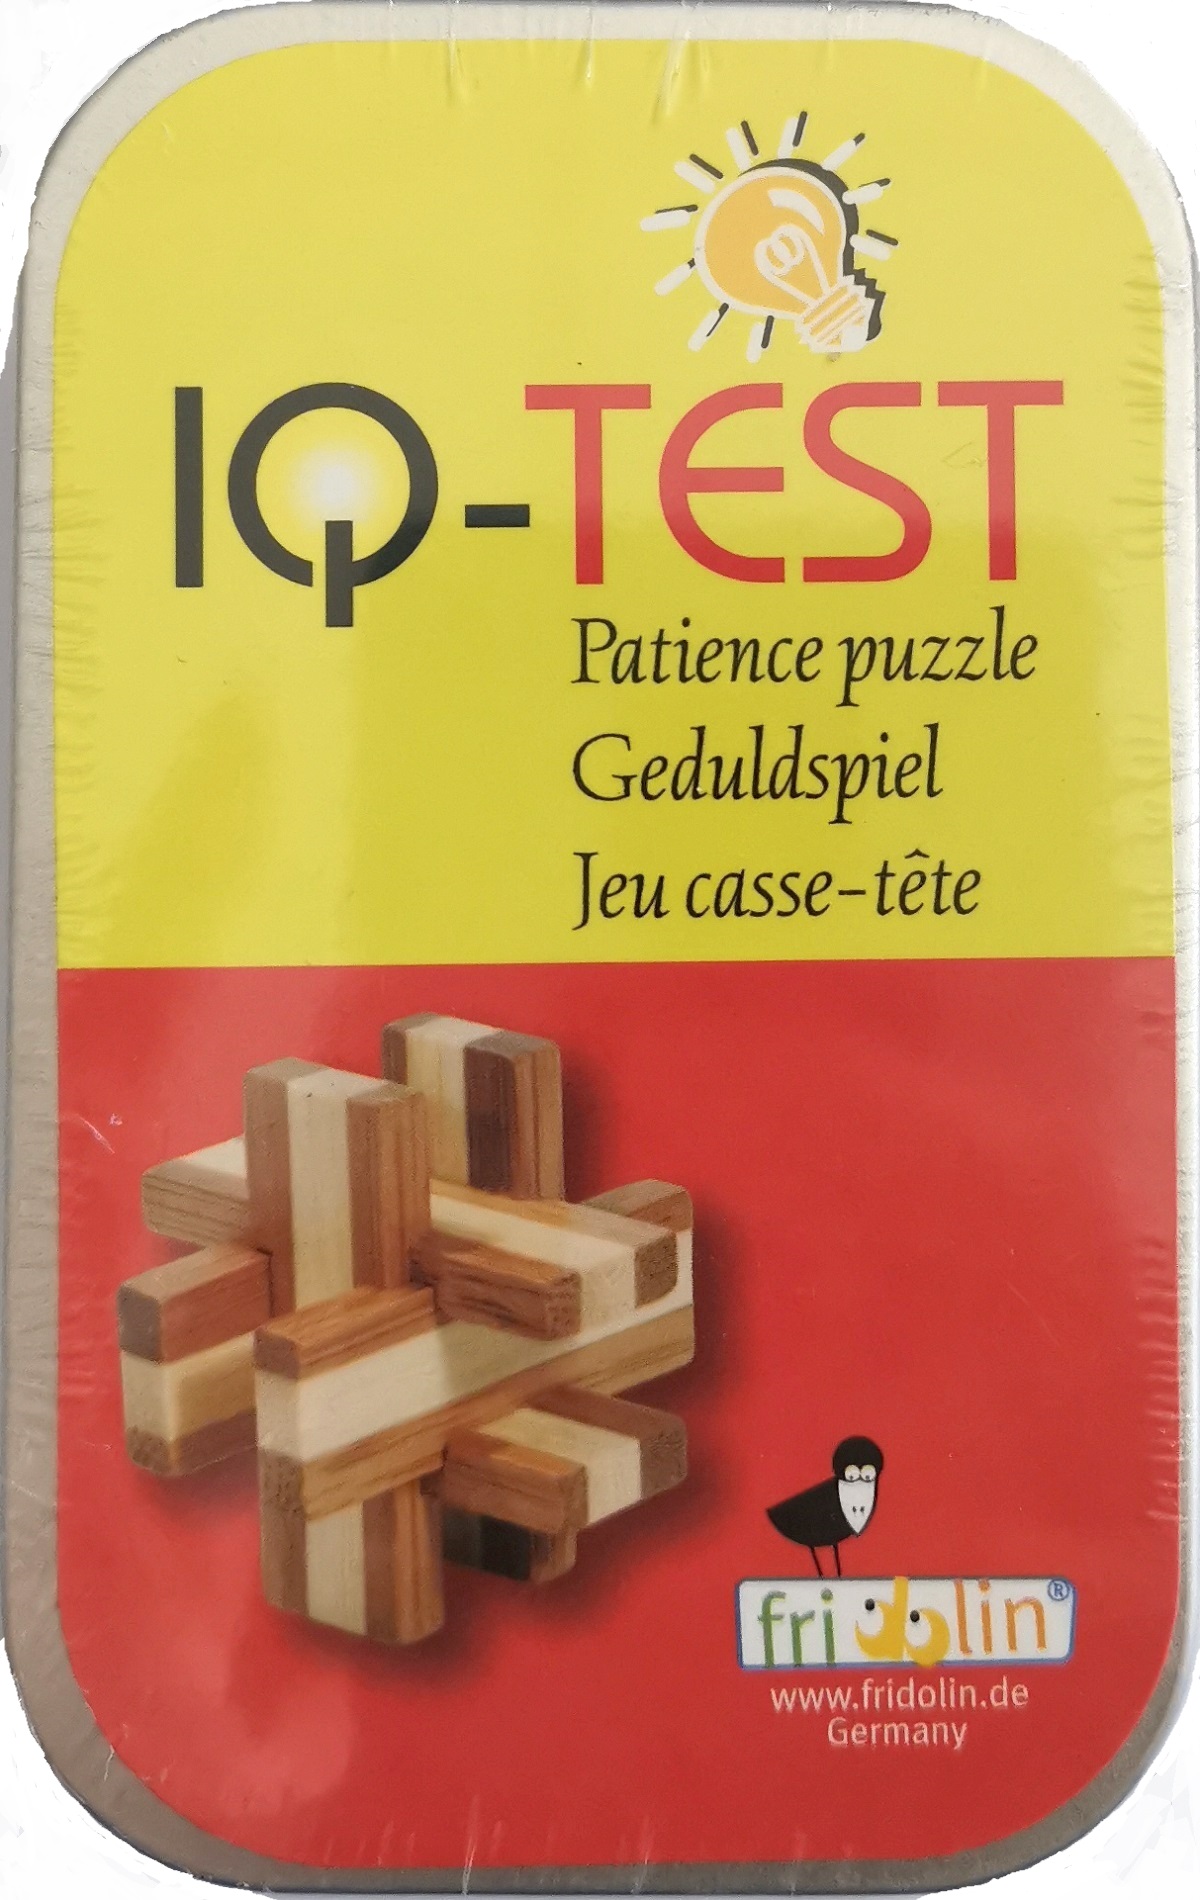 IQ-Test. Joc logic puzzle 3D in cutie metalica